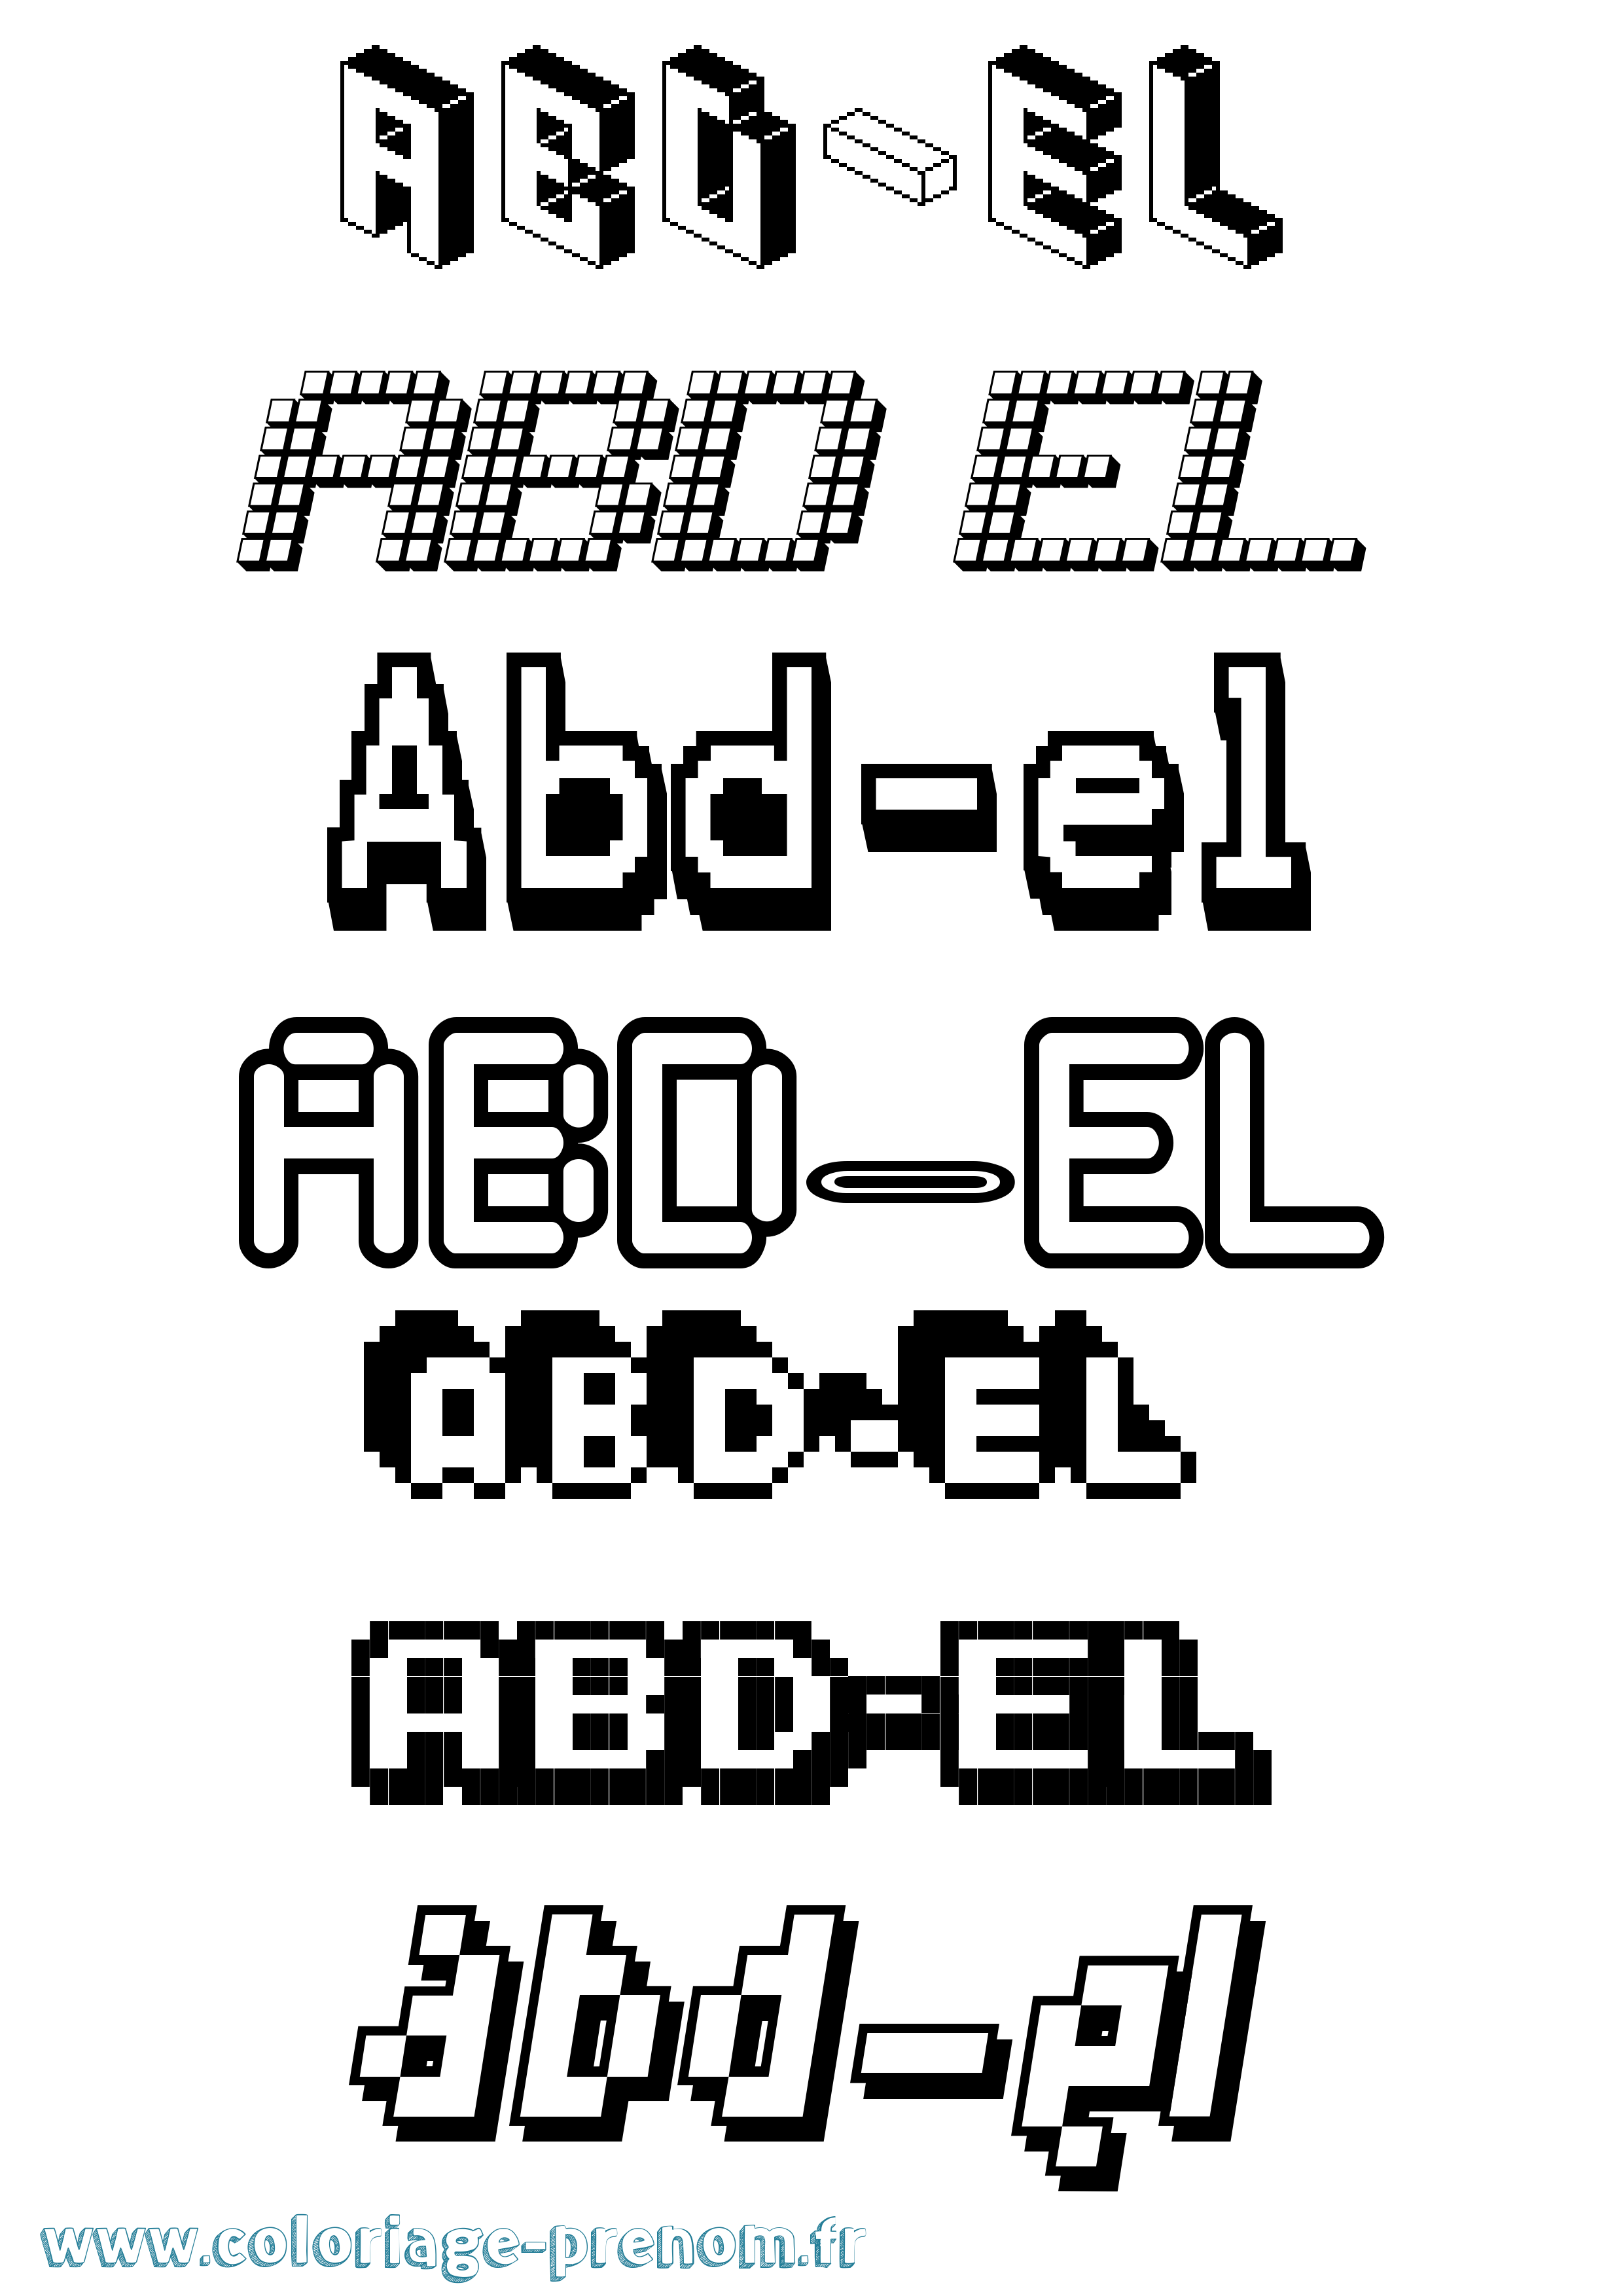 Coloriage prénom Abd-El Pixel